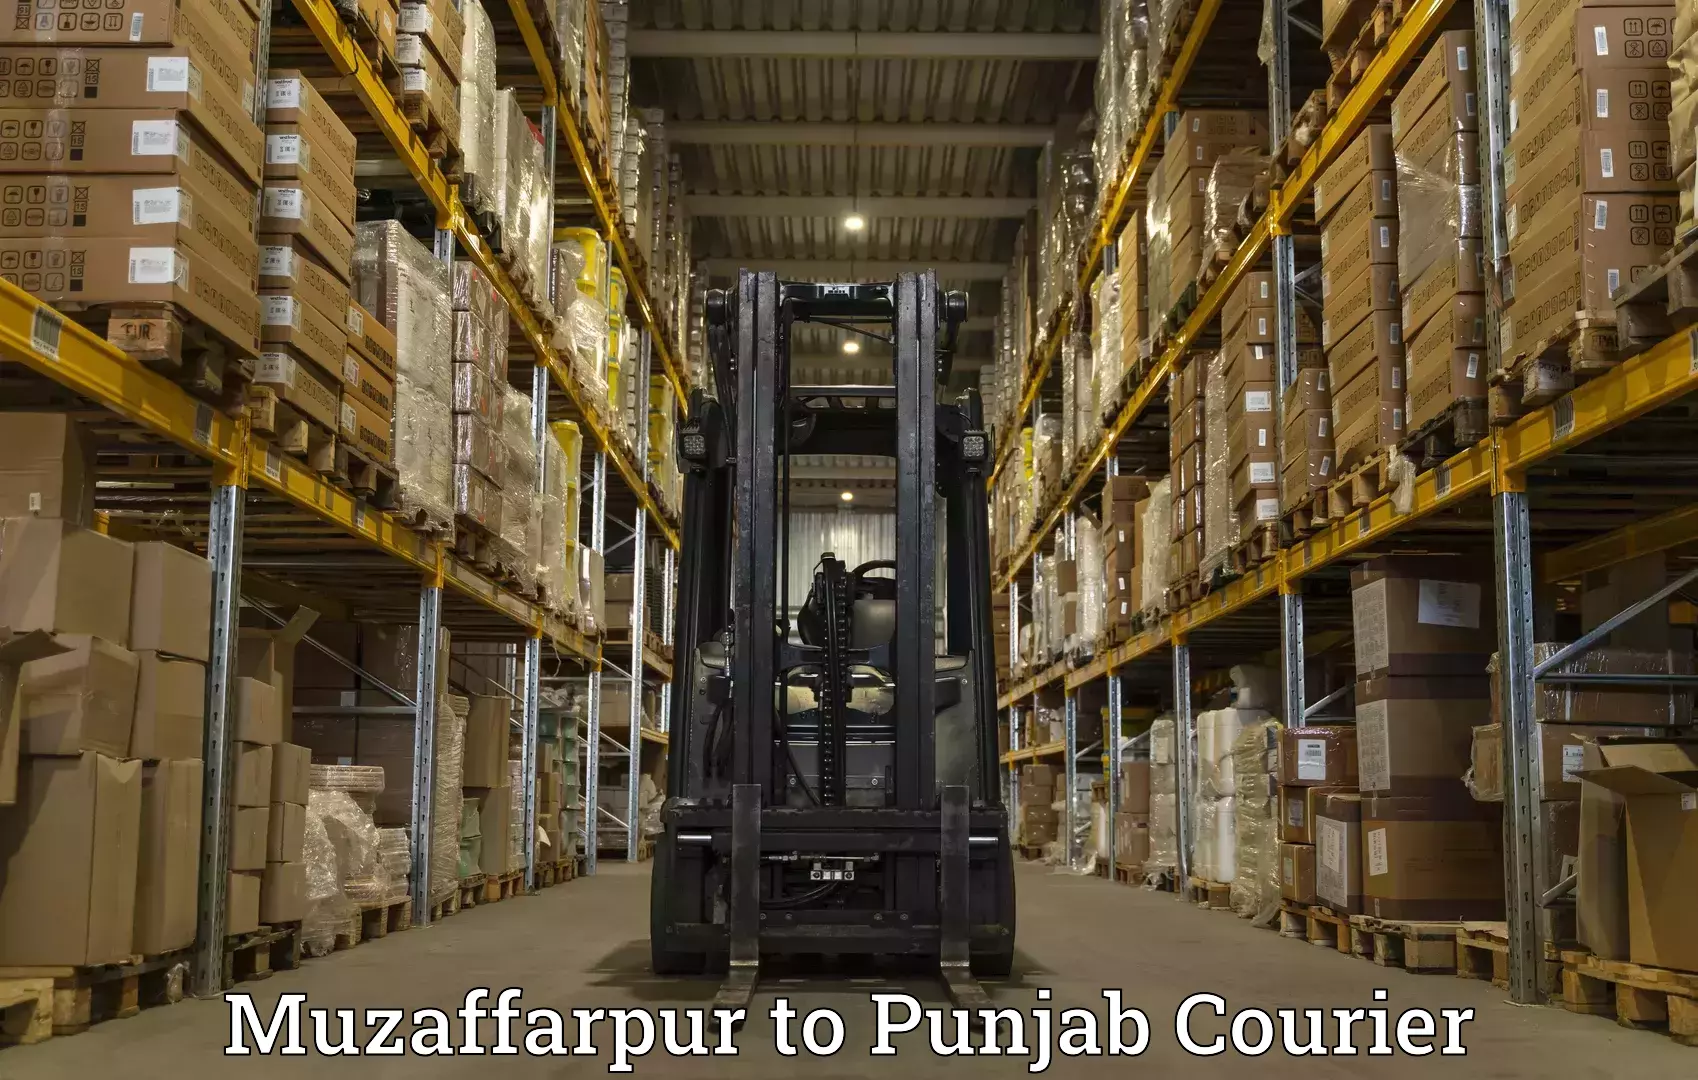 Business shipping needs Muzaffarpur to Dinanagar